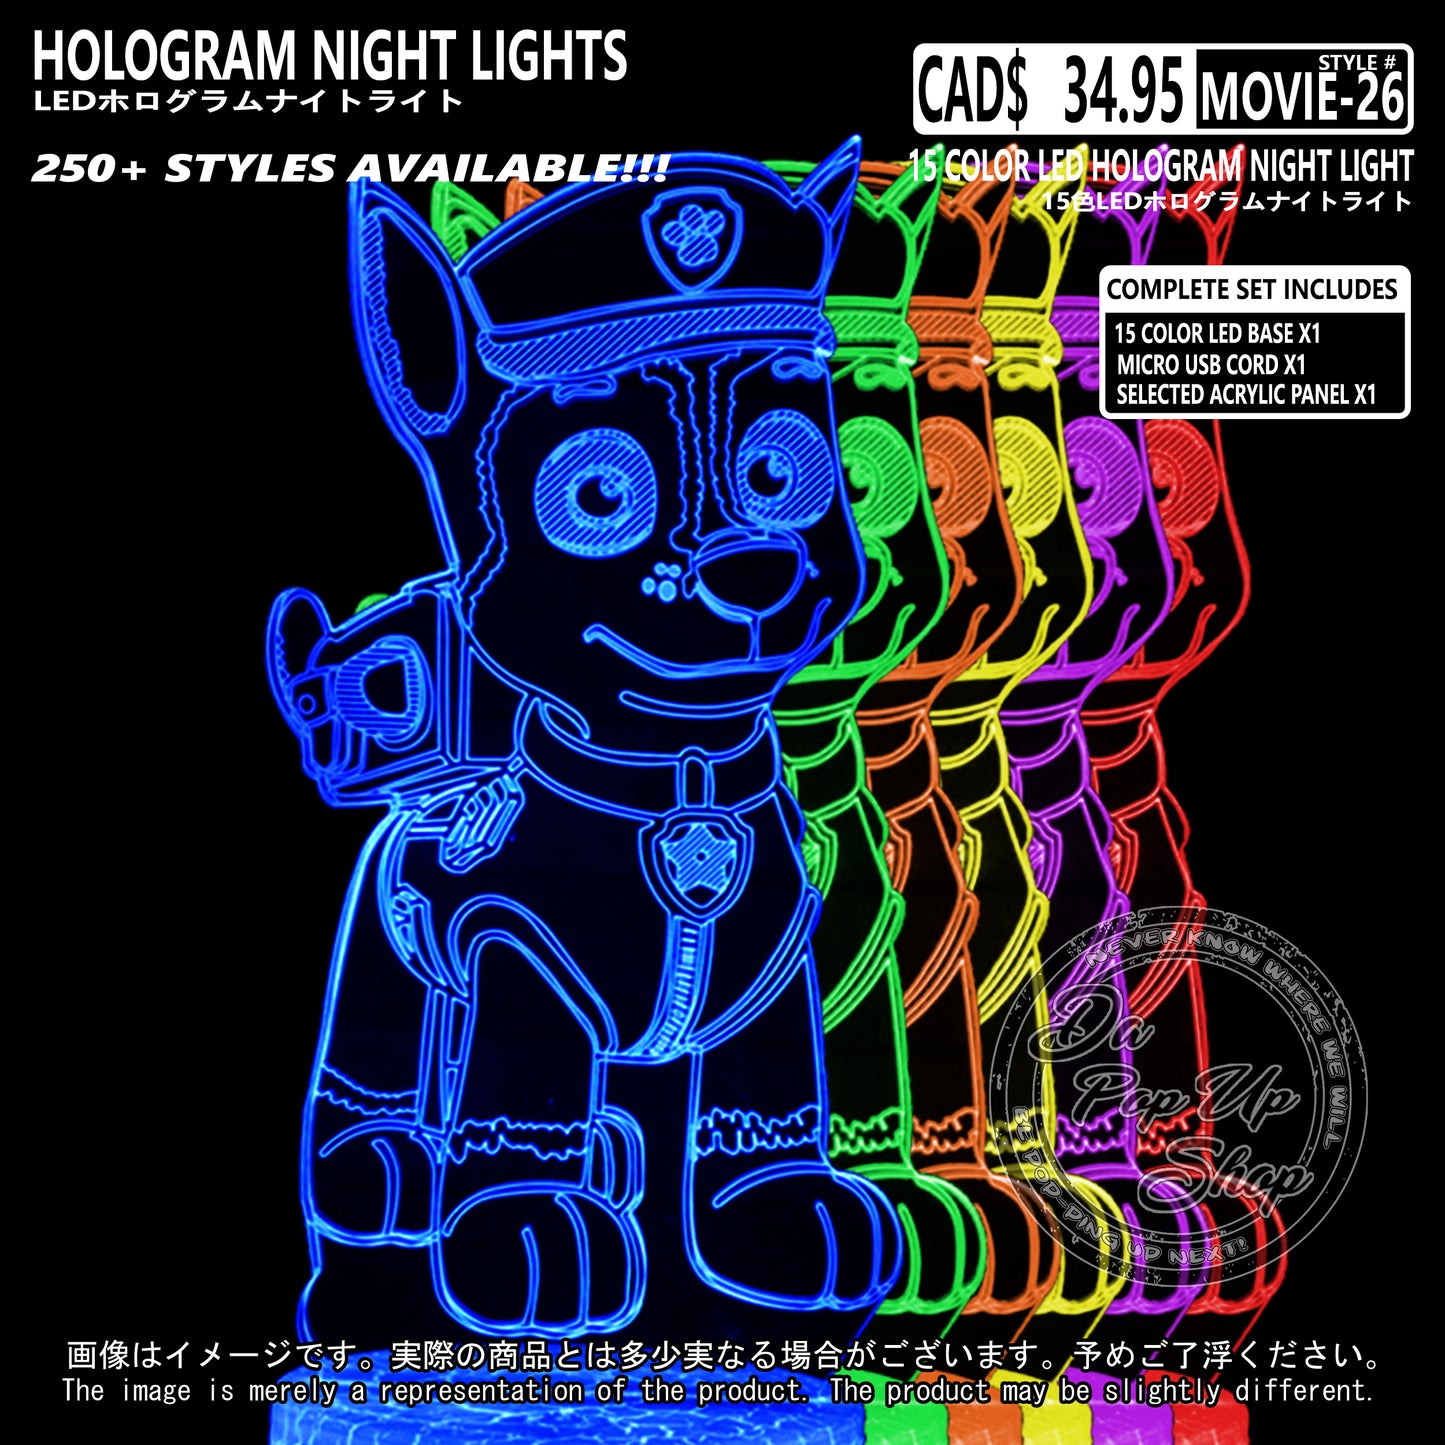 (MOVIE-26) CHASE Paw Patrol Hologram LED Night Light